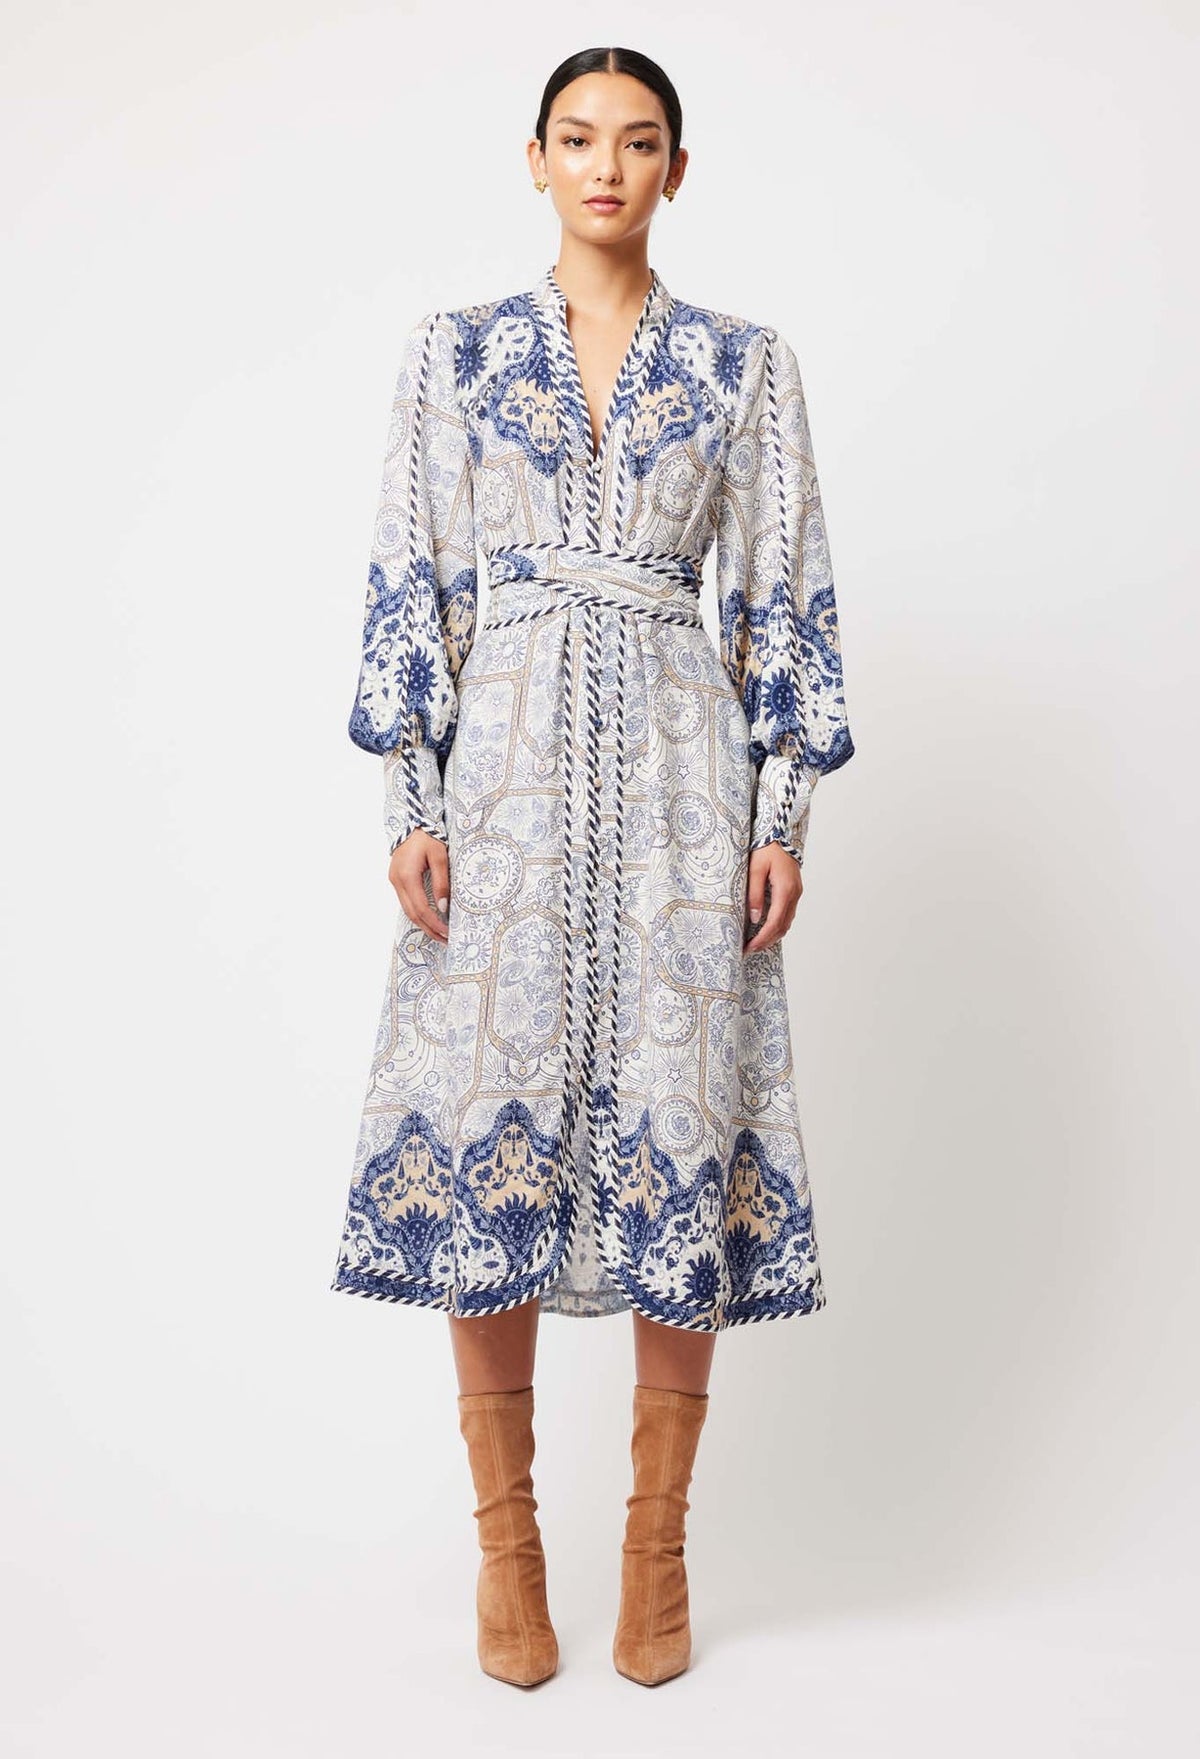 Nova Linen Viscose Dress in Astral Print